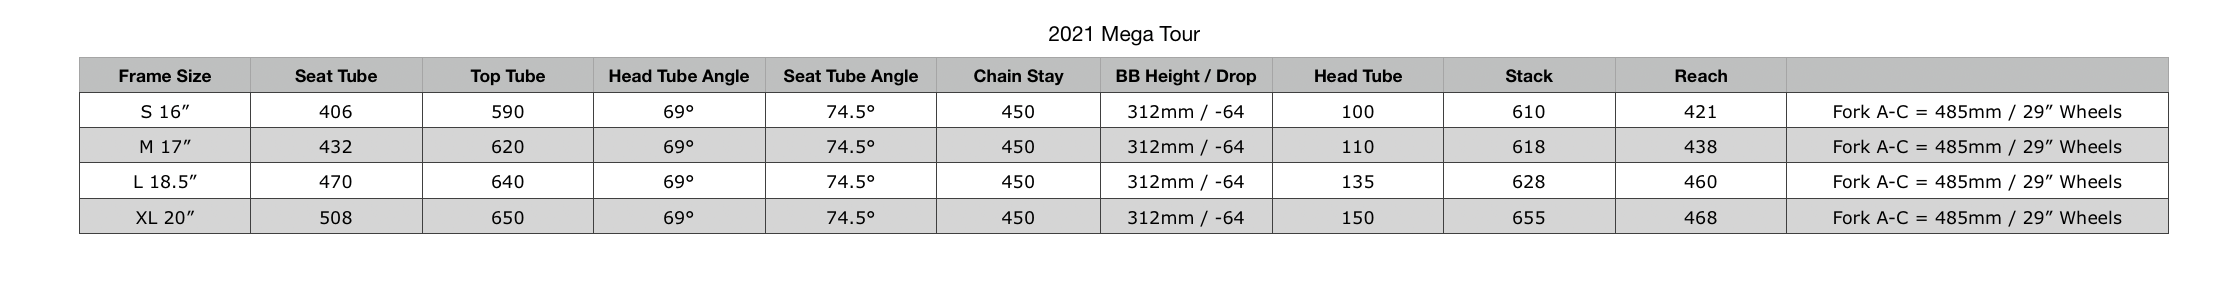 2021 MEGA TOUR Geometry.png